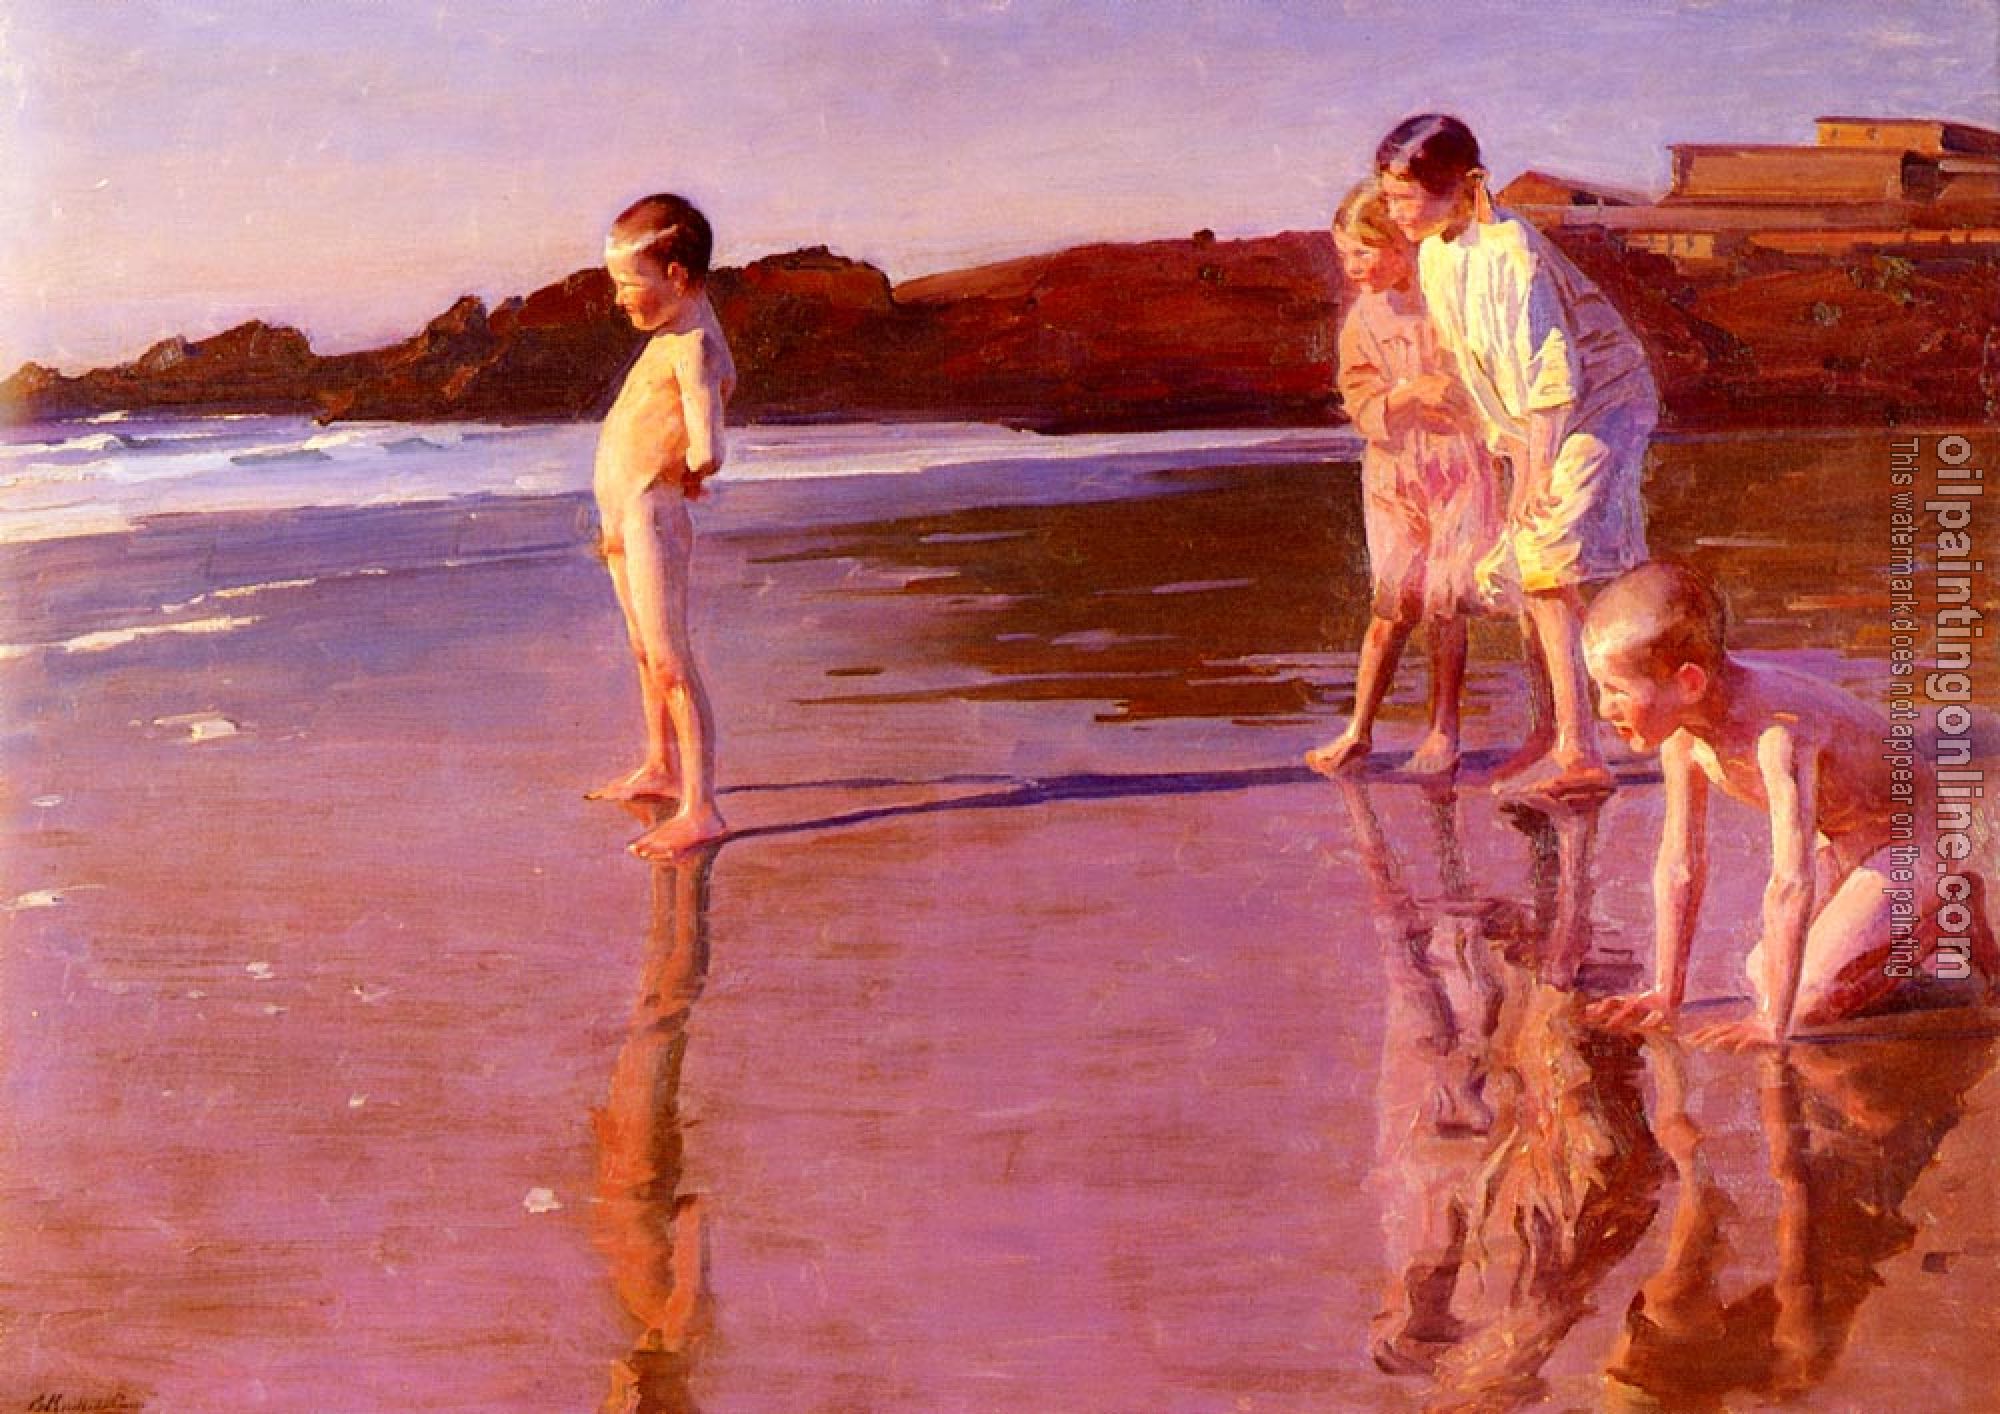 Benito Rebolledo Correa - Children On The Beach At Sunset, Valencia